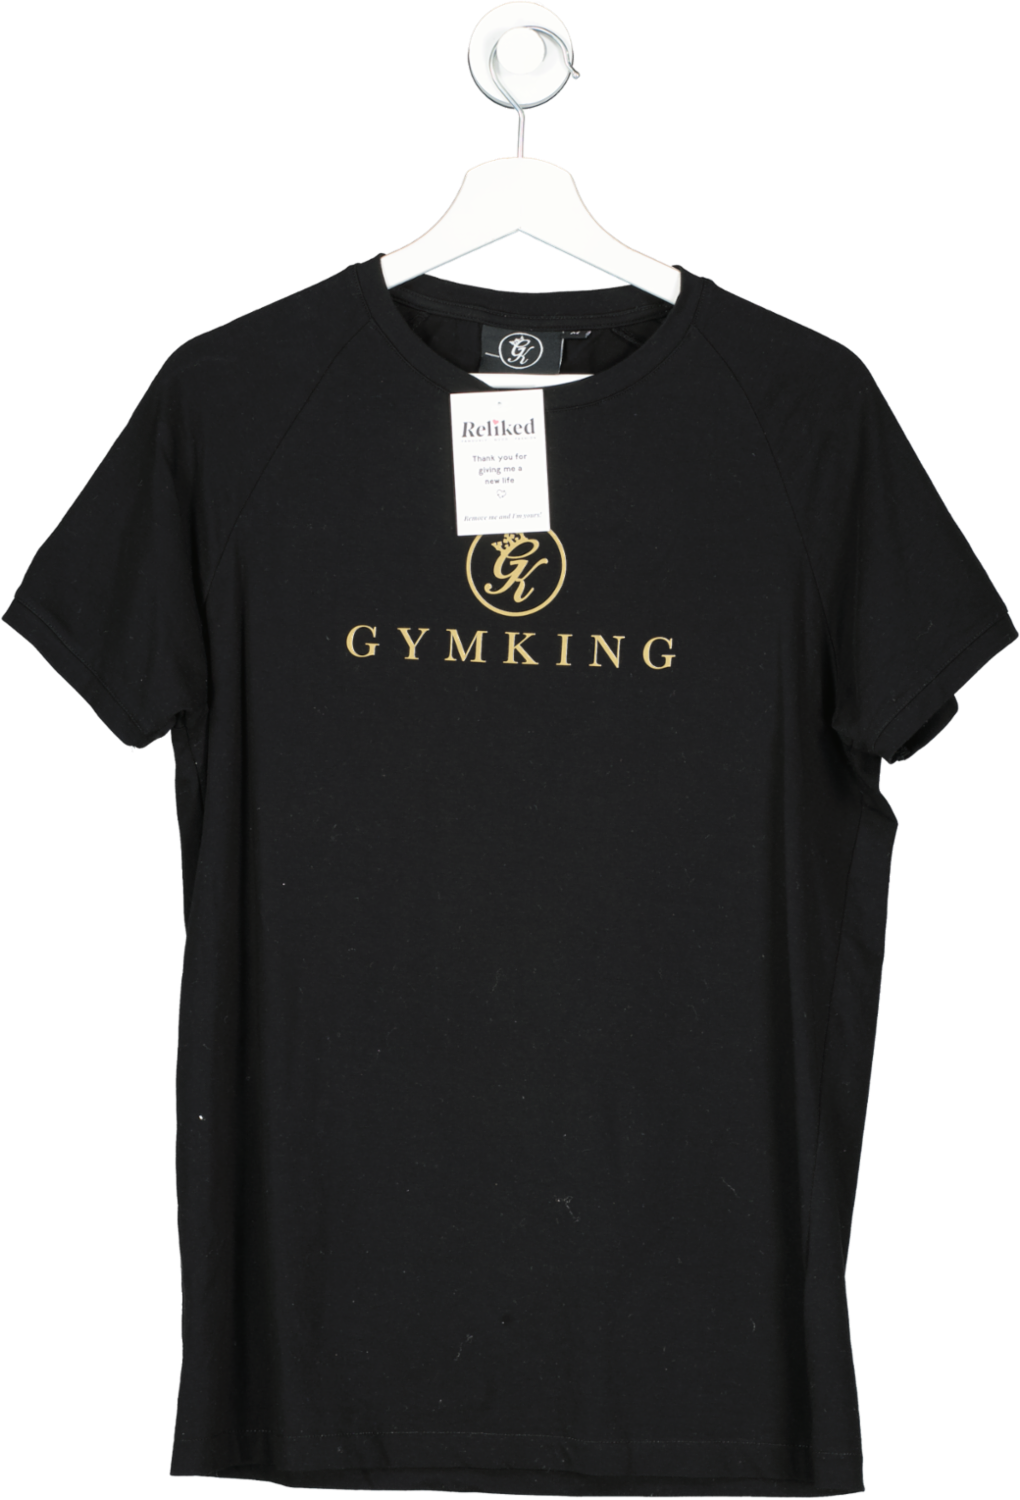 GYM KING Black Pro Jersey T Shirt UK M